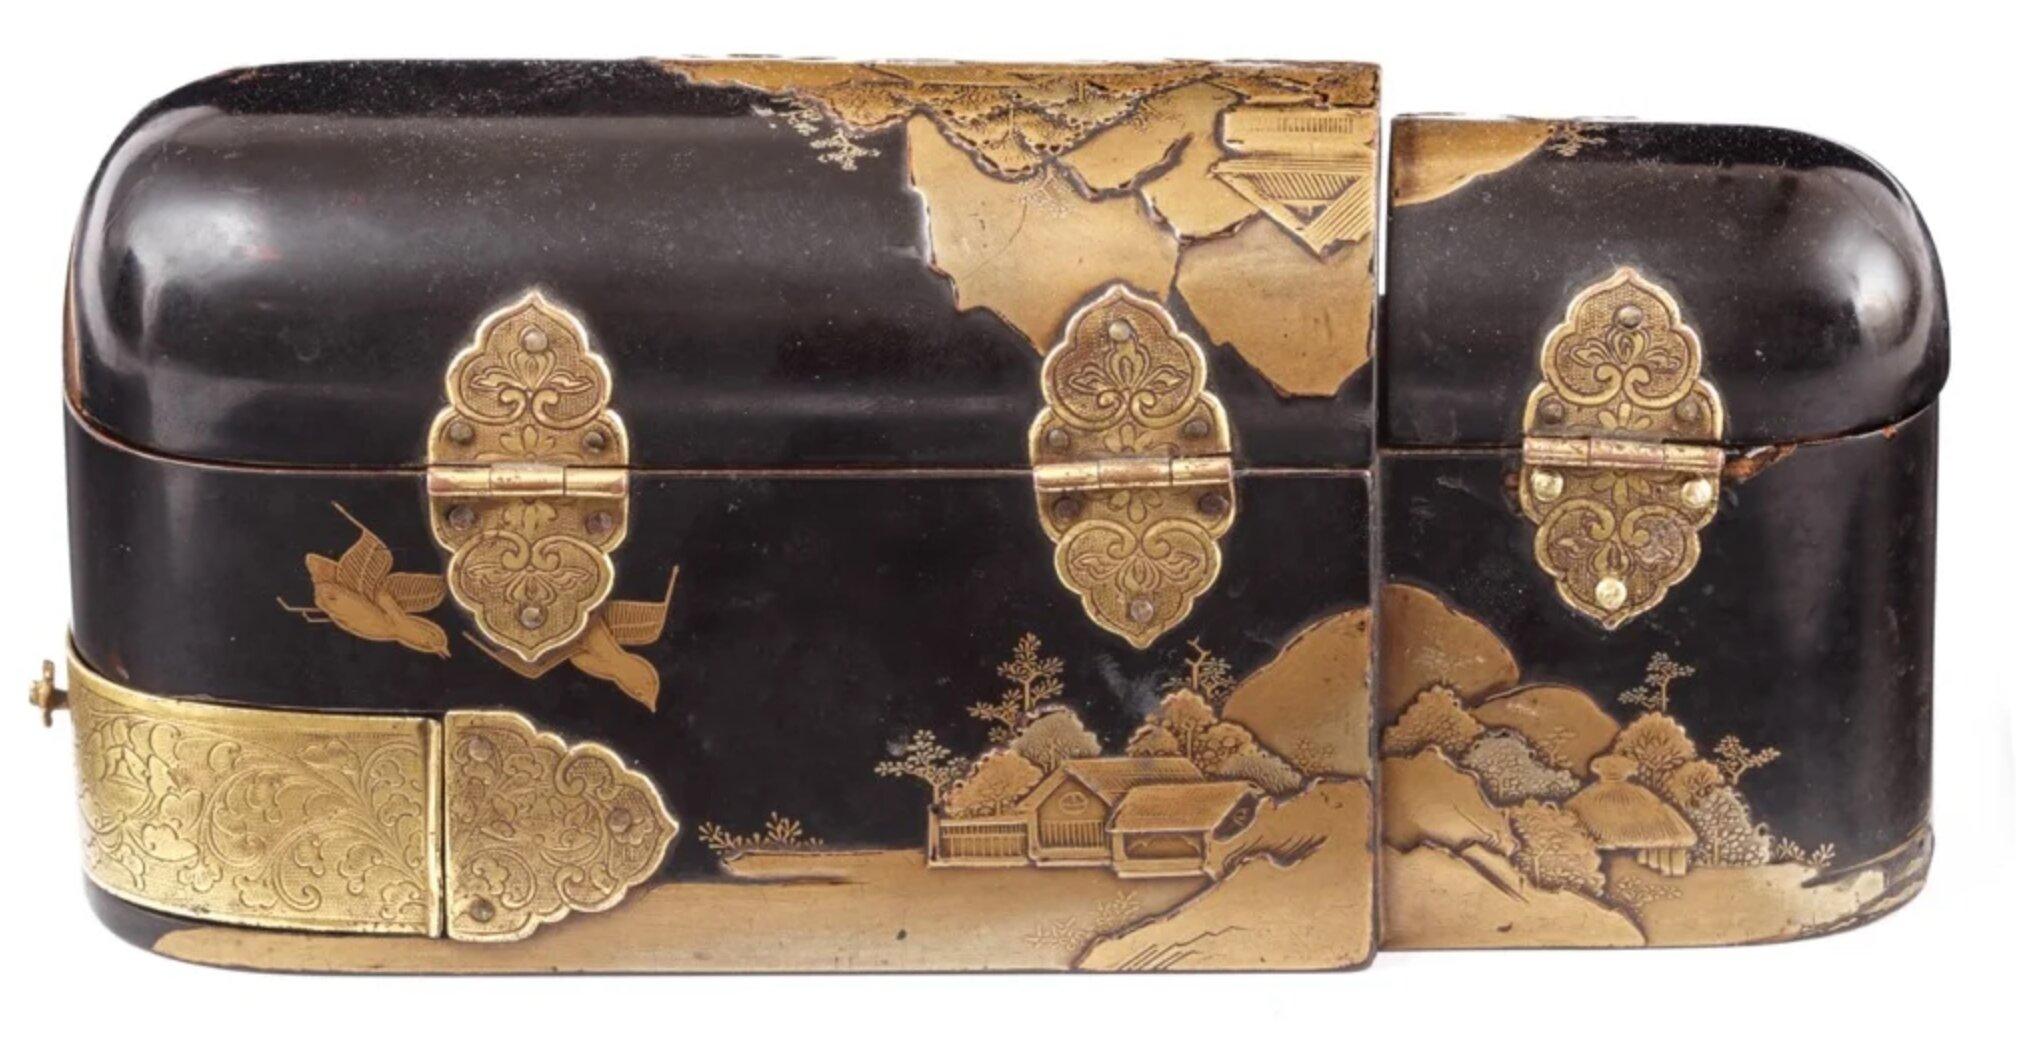 Seltener japanischer Export-Lackkasten für medizinische Instrumente
Edo-Periode, 1650-1700


L. 19 x B. 6 x H. 8,5 cm

Diese unkonventionell geformte, malerisch verzierte Lackschachtel offenbart eine hochspezialisierte Funktionalität. Der